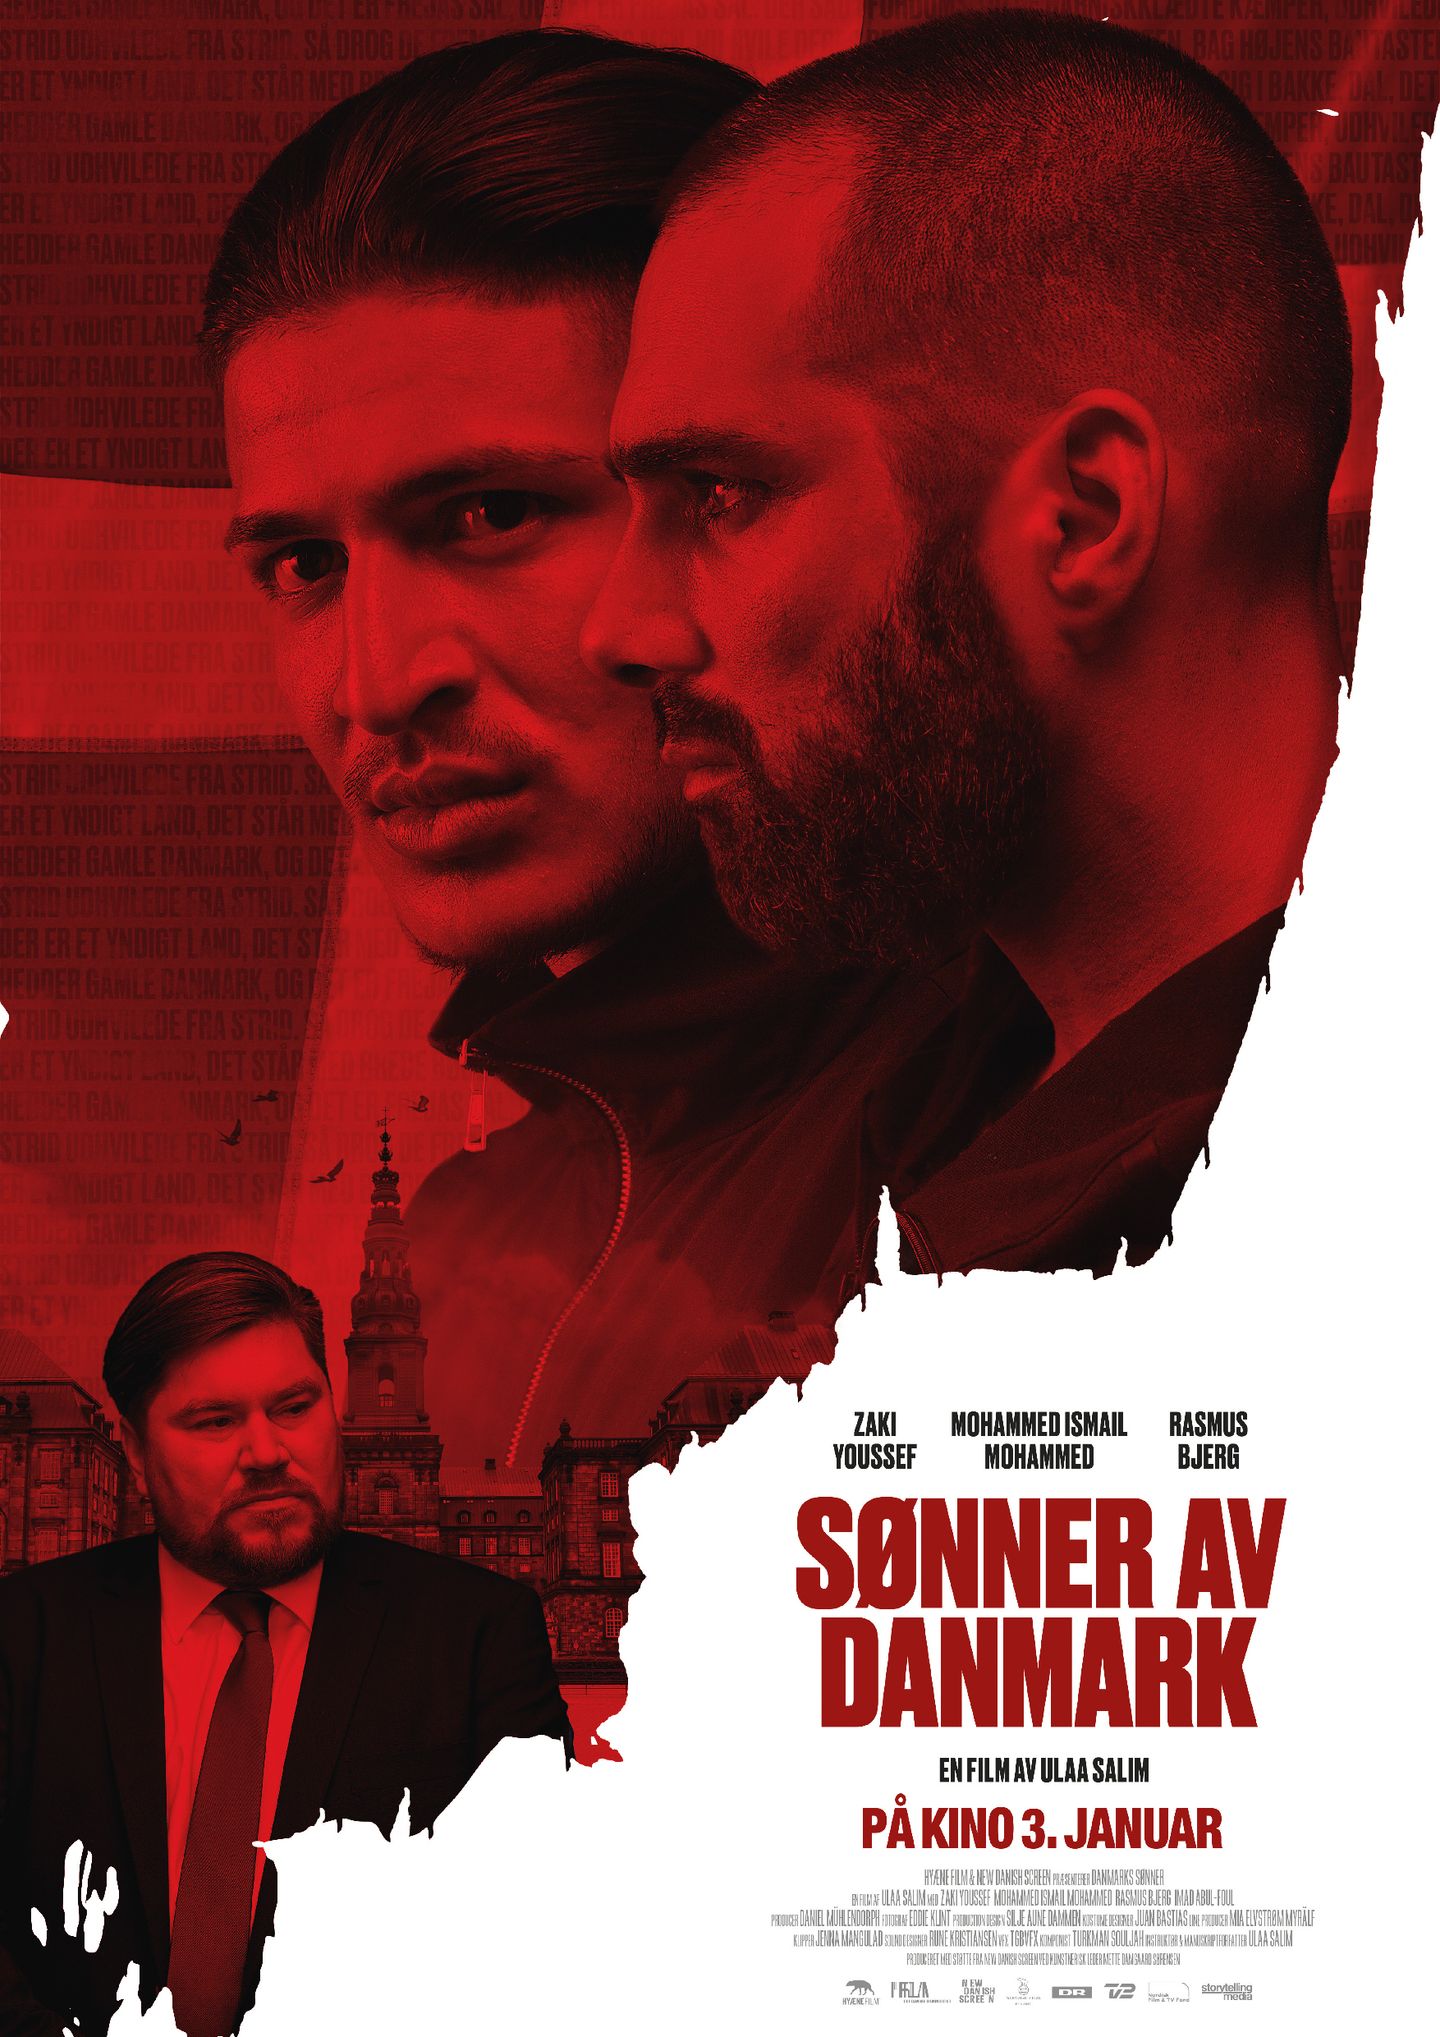 Plakat for 'Sønner av Danmark'